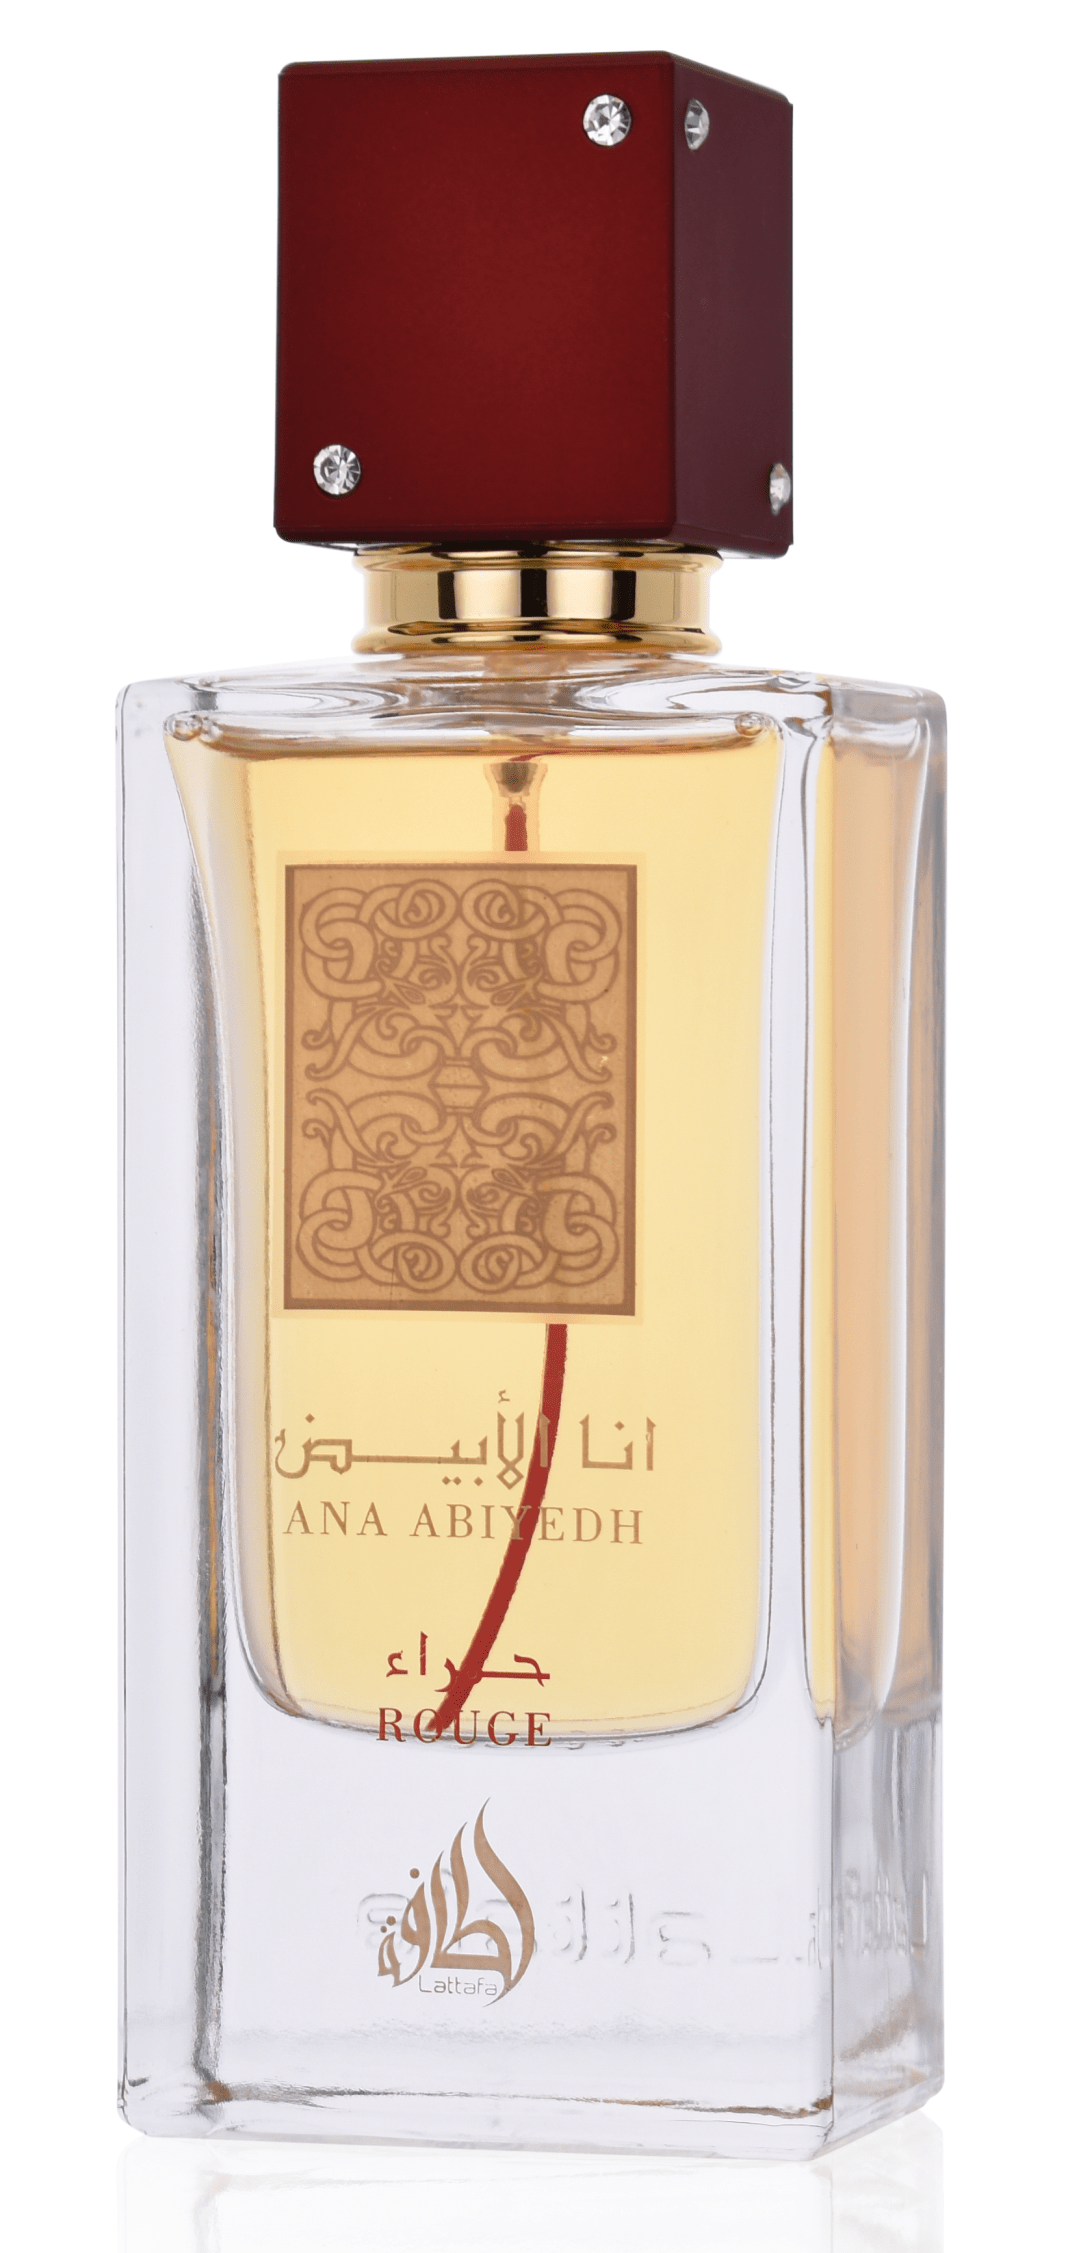 Lattafa Ana Abiyedh Rouge 60 ml Eau de Parfum          